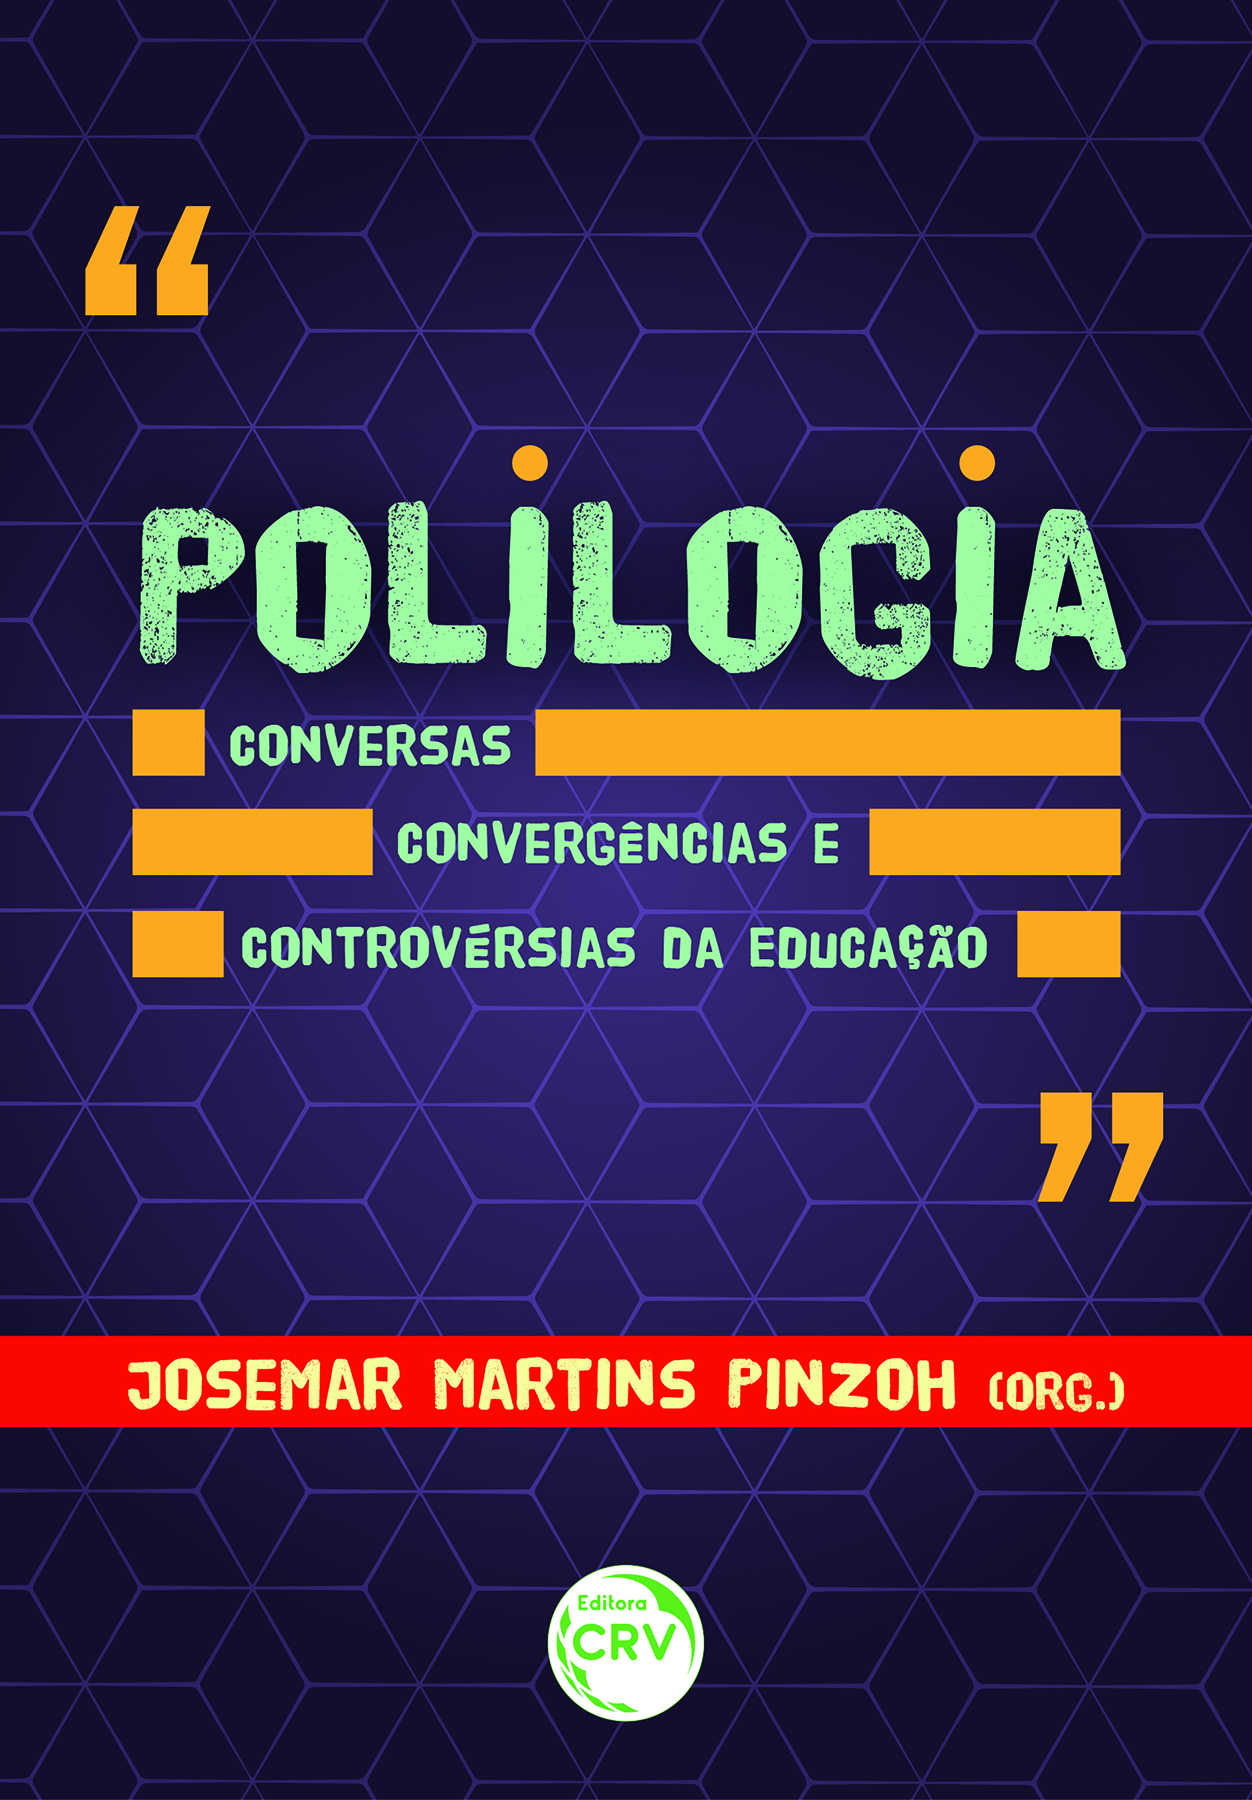 Capa do livro: POLILOGIA <BR> Conversas, convergências e controvérsias da educação